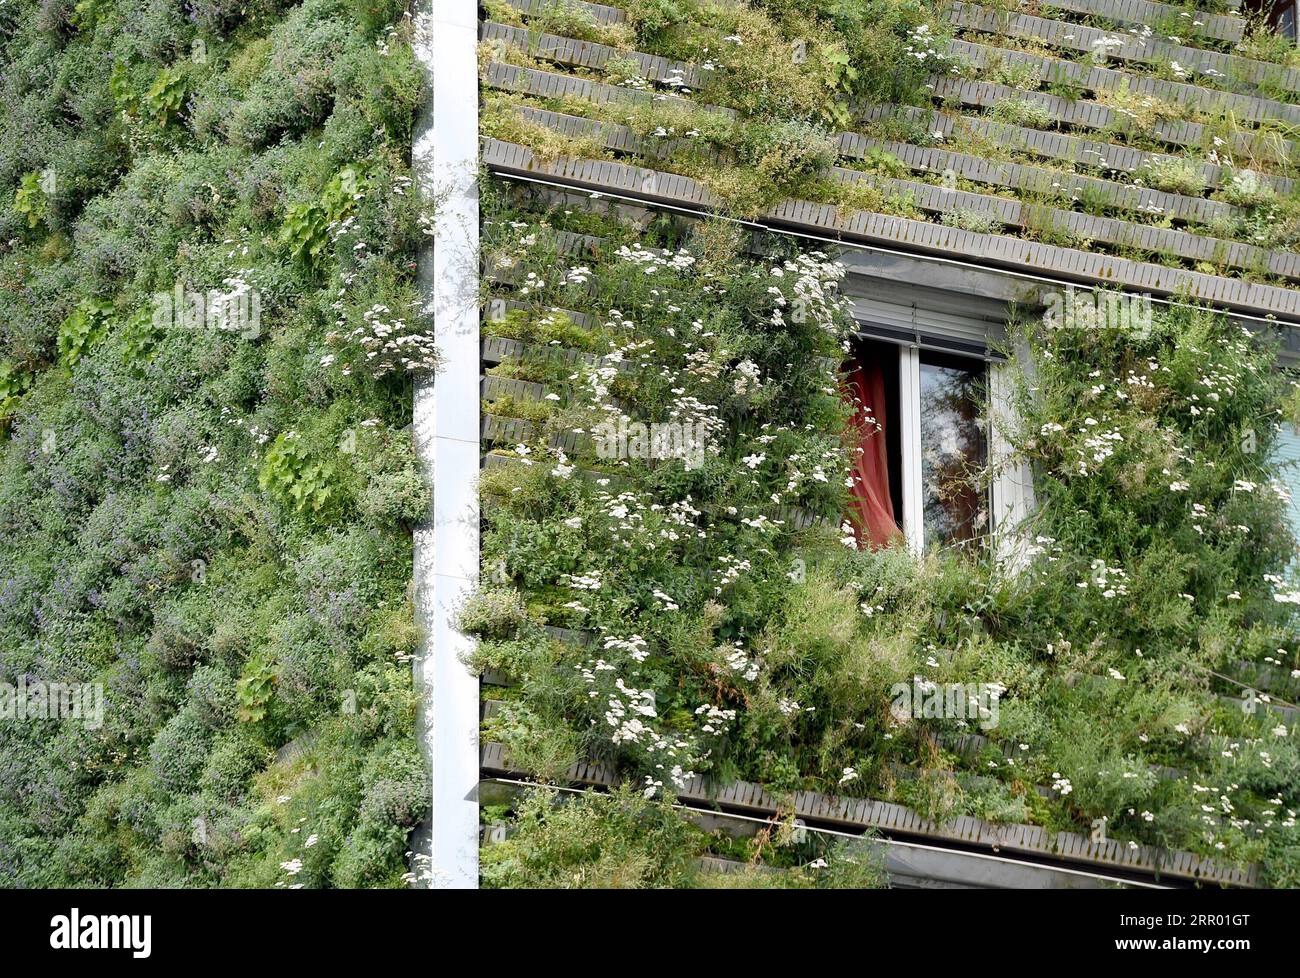 200722 -- WIEN, 22. Juli 2020 -- Foto vom 22. Juli 2020 zeigt grüne Fassaden des Hauptsitzes der MA 48 in Wien, Österreich. Die Fassaden des Hauptquartiers der MA 48 waren mit grünen Pflanzen gesäumt, die sich positiv auf das Mikroklima, den Schutz der Bausubstanz vor treibendem Regen und Schmutzablagerungen, den Lärmschutz und die Kühlleistung auswirkten. ÖSTERREICH-WIEN-MA 48 HAUPTSITZ-GRÜNE FASSADEN GUOXCHEN PUBLICATIONXNOTXINXCHN Stockfoto